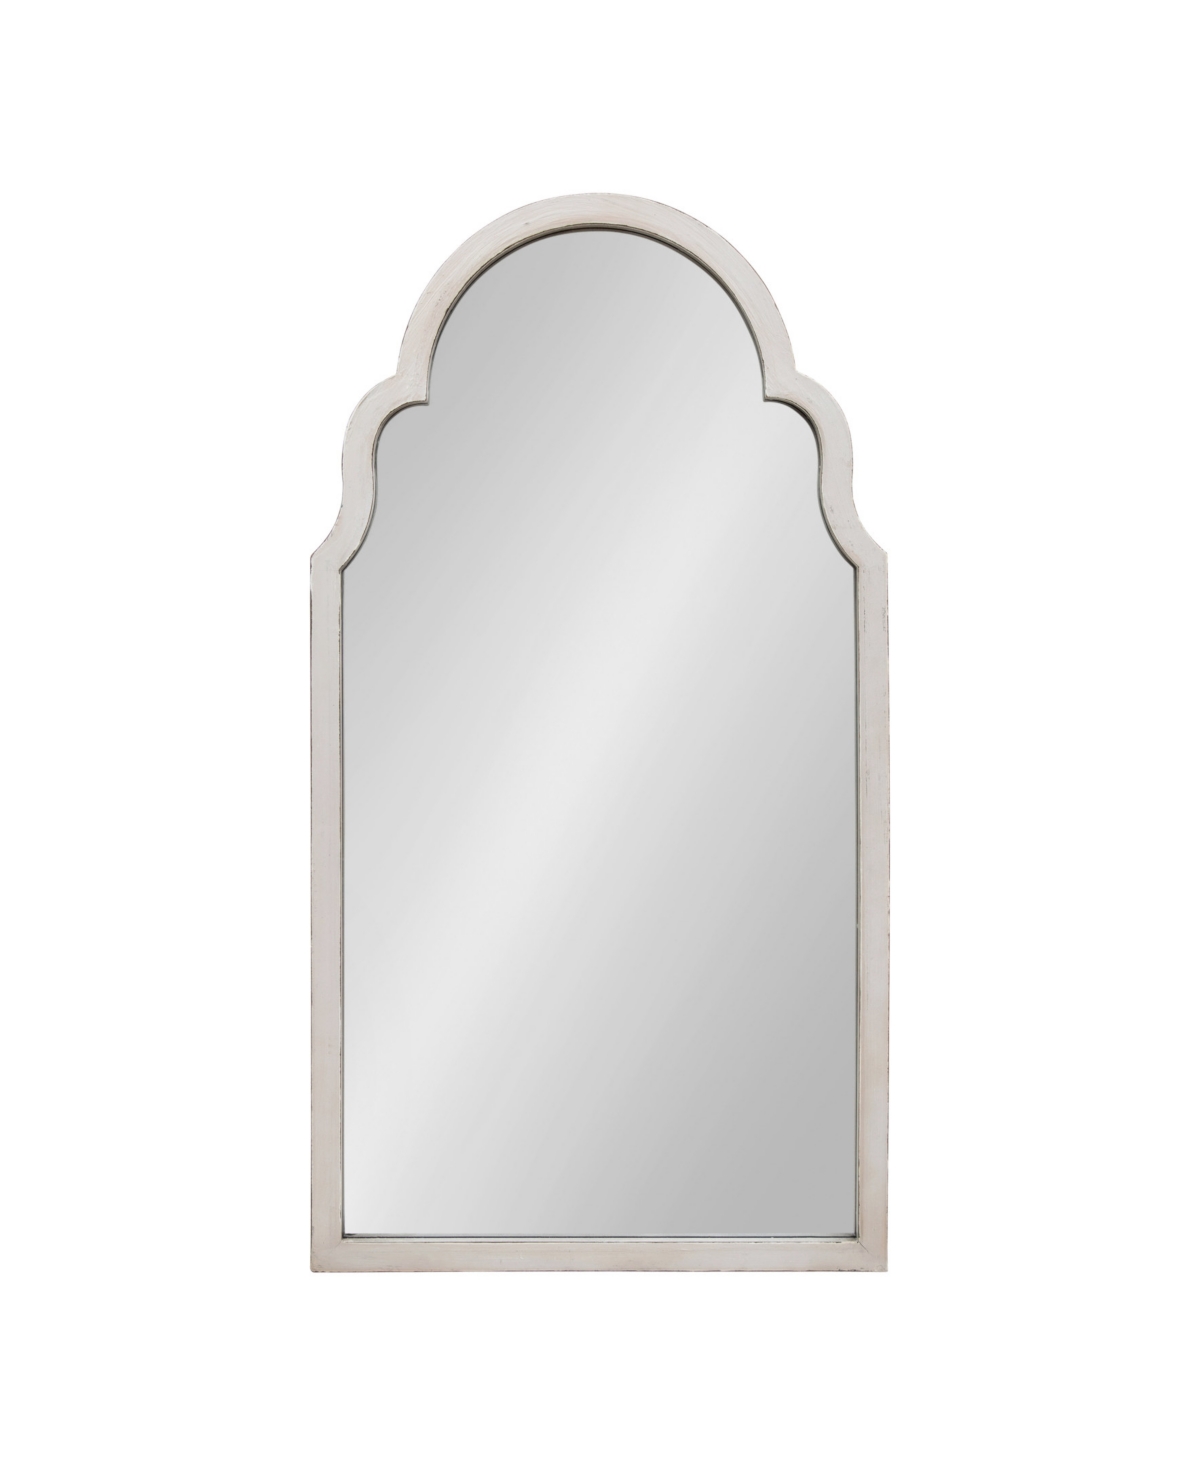 Damara Moroccan Style Arch Mirror - White